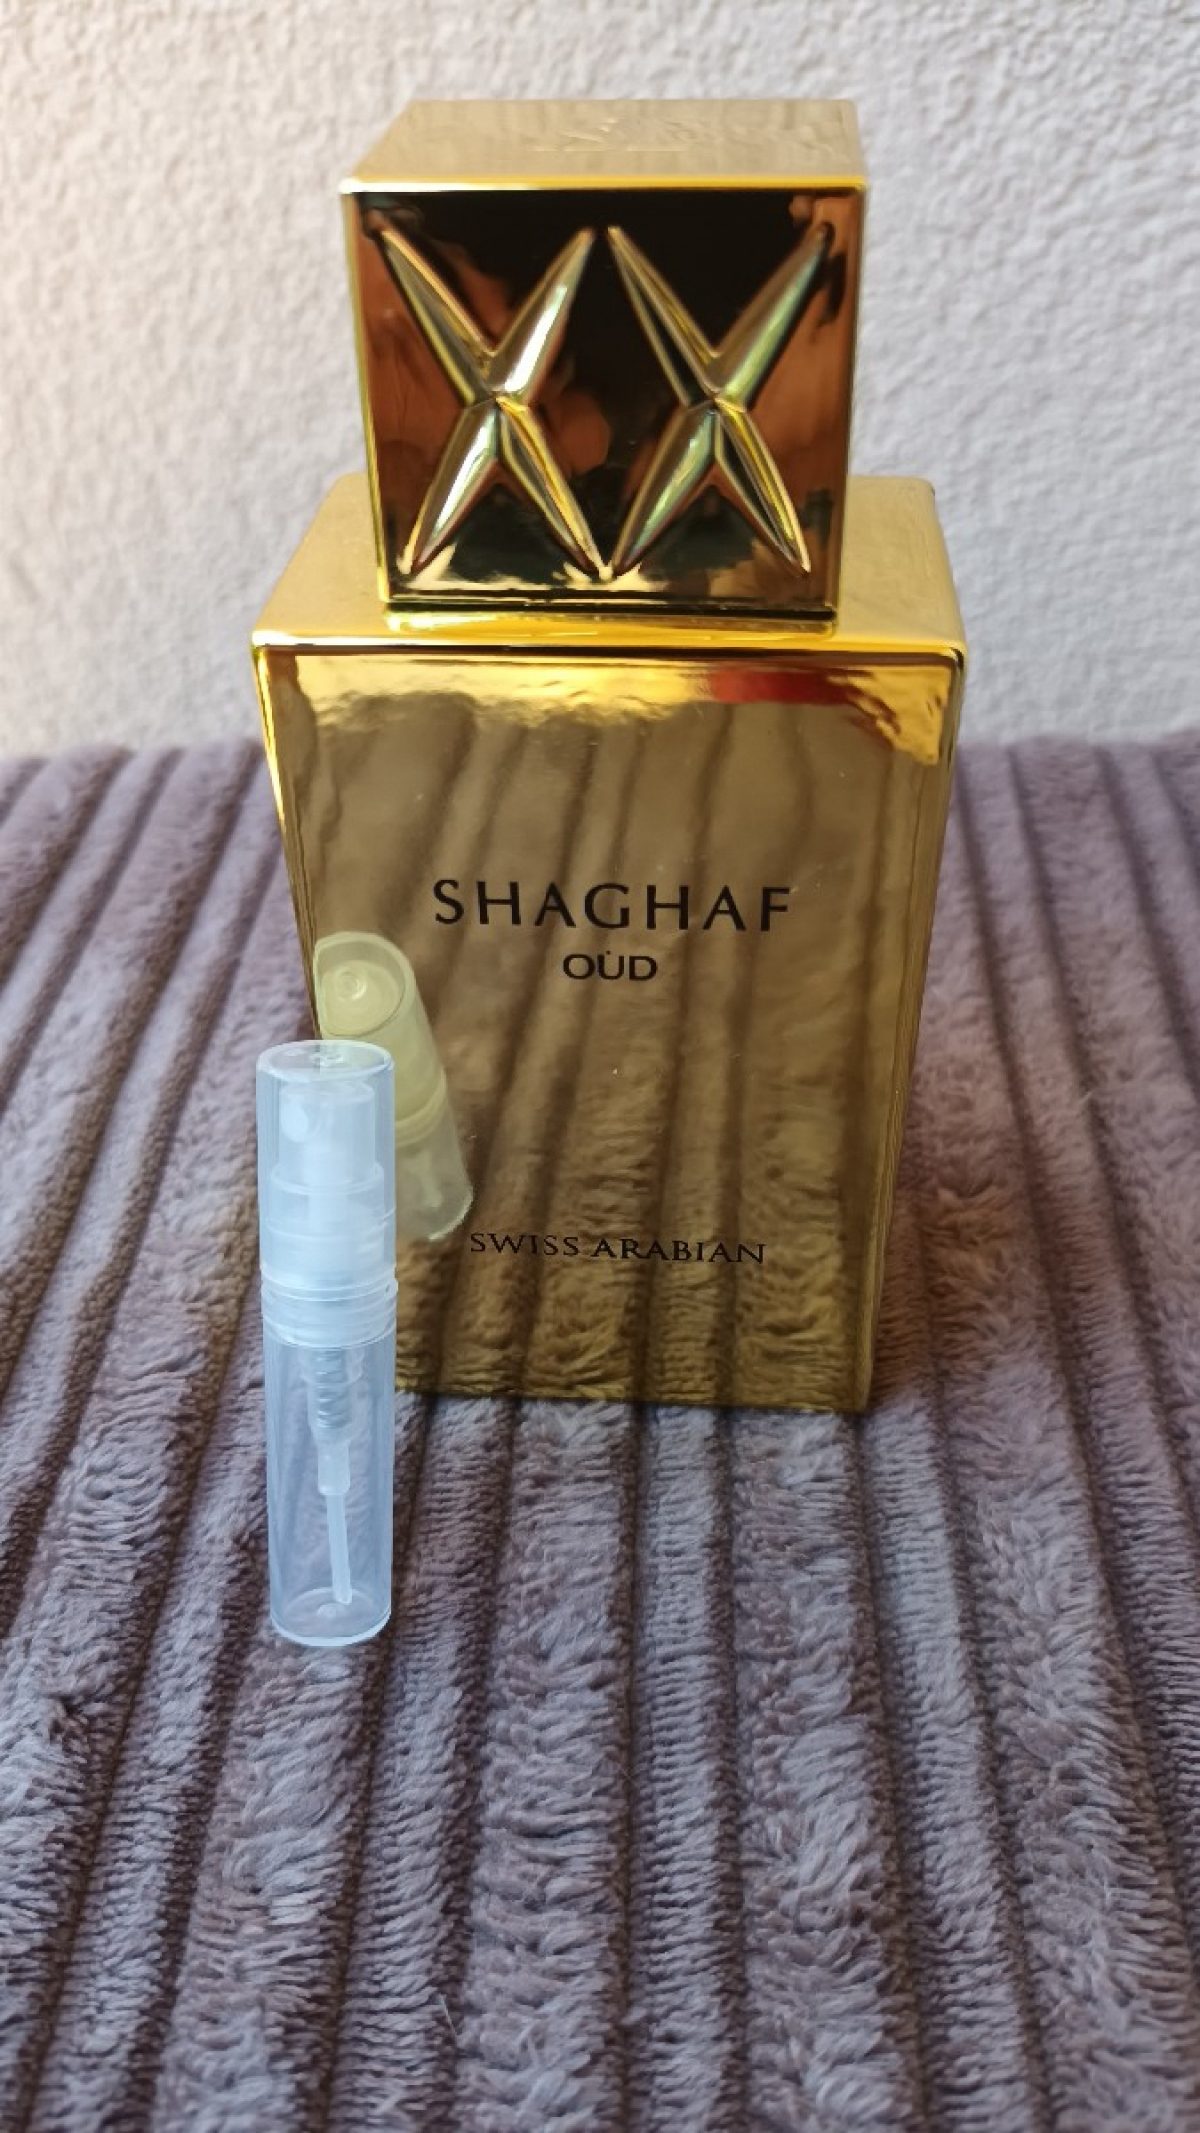 Swiss Arabian Shaghaf Oud 2 ml spray